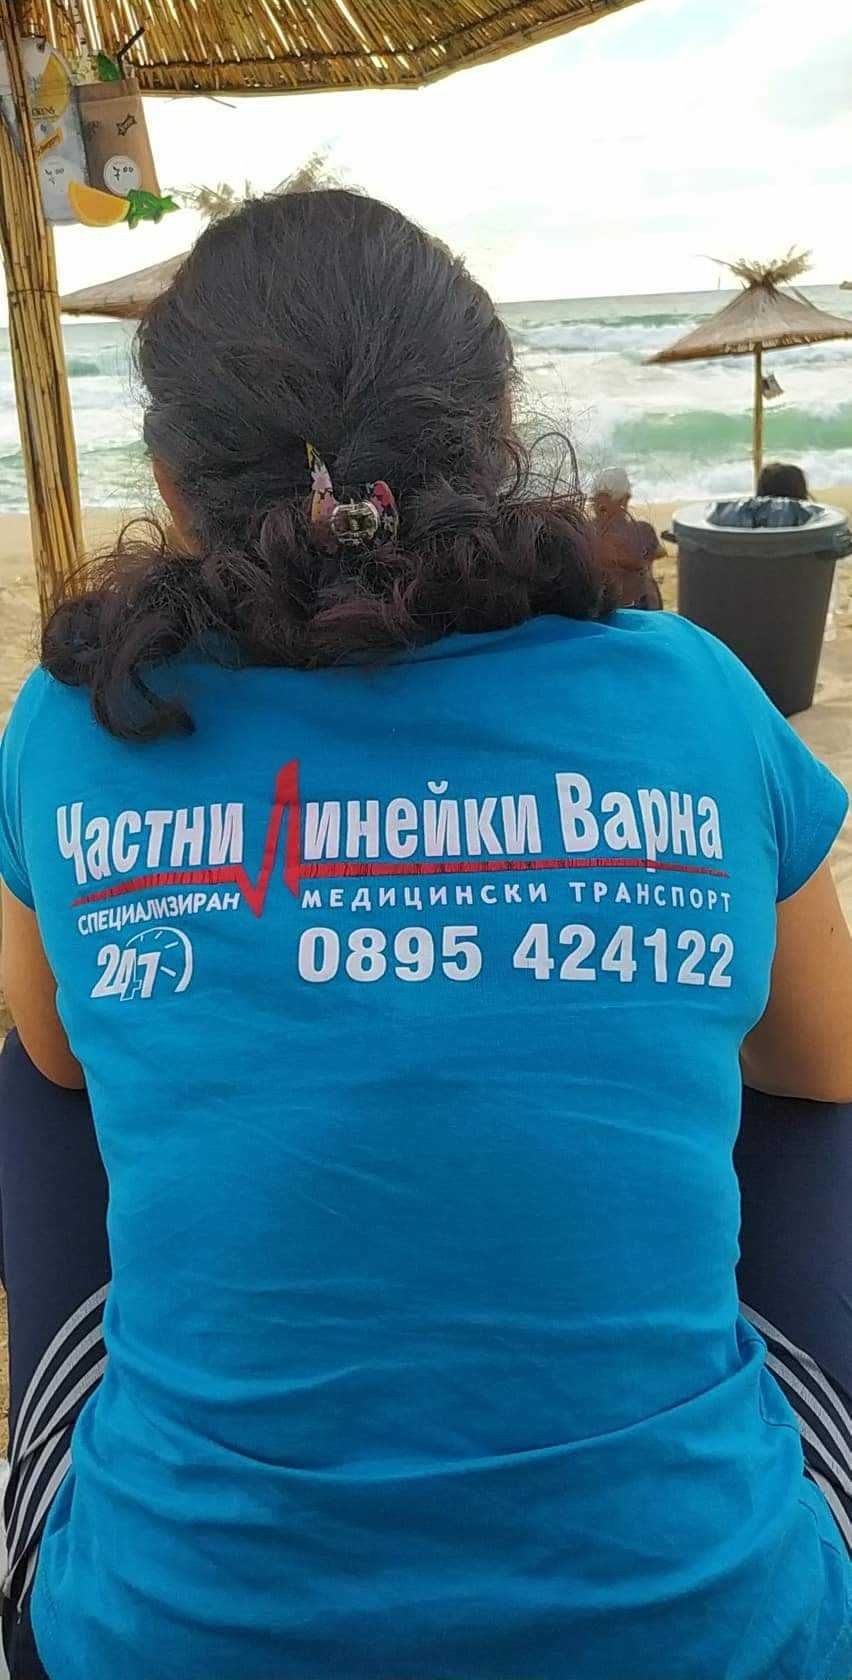 Частни линейки - Варна за страната и чужбина.